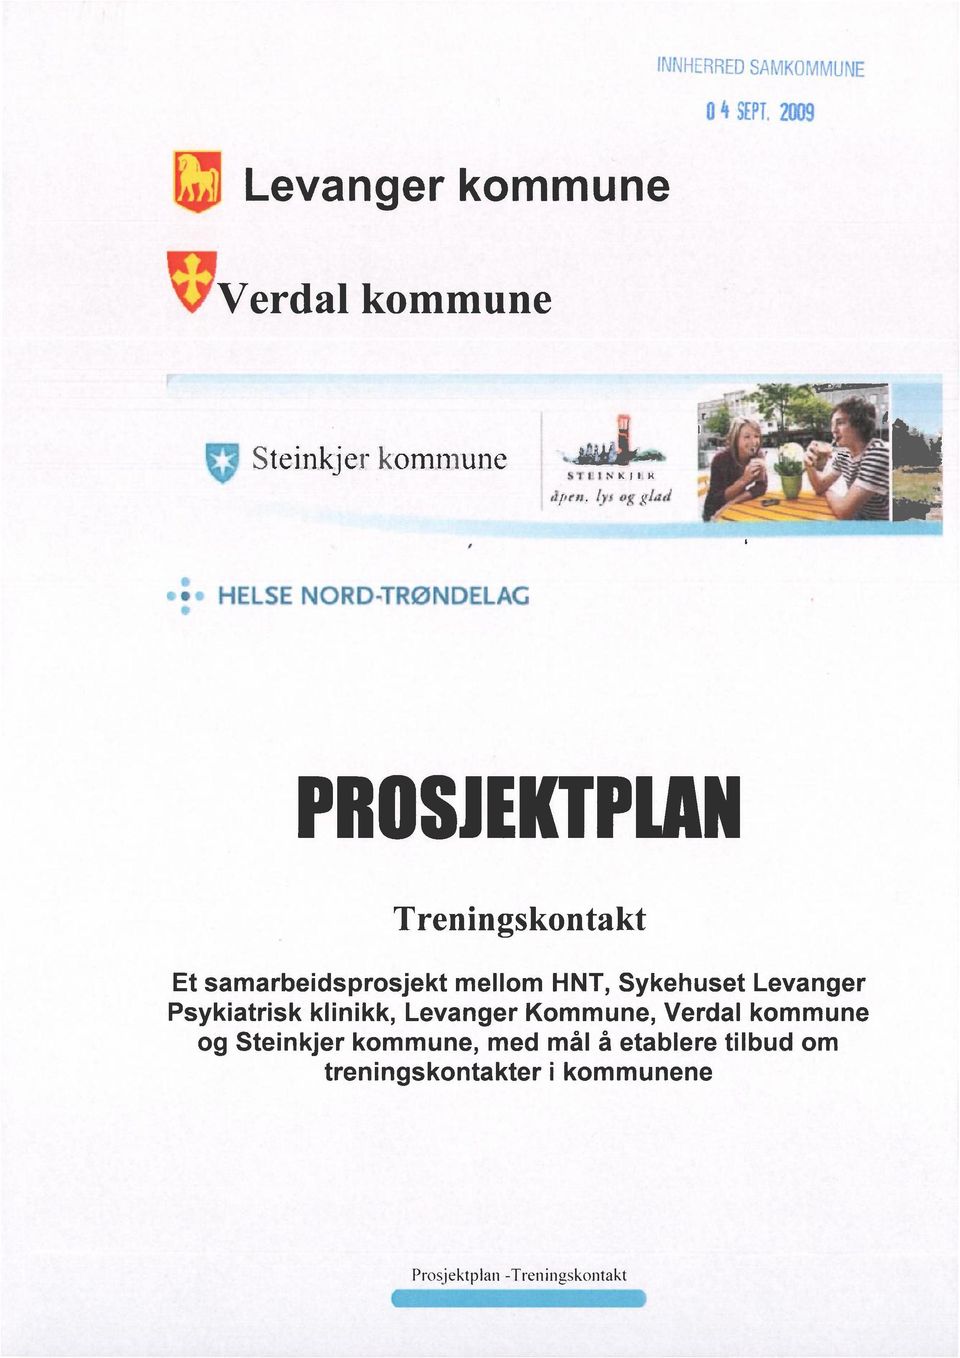 Levanger Psykiatrisk klinikk, Levanger Kommune, Verdal kommune og Steinkjer